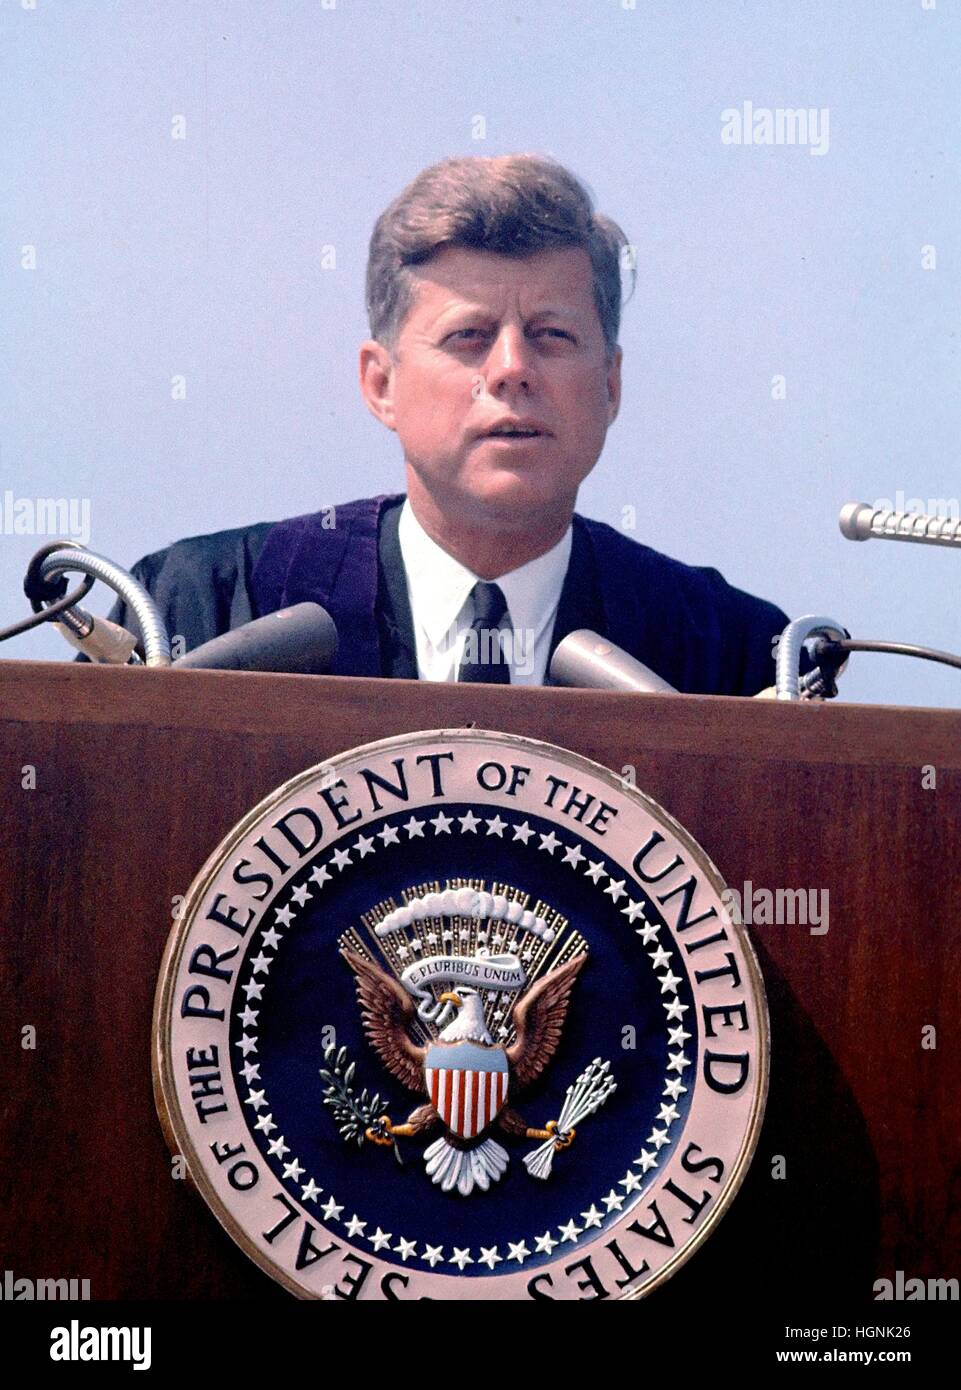 Le président des États-Unis John F. Kennedy prend la parole à l'ouverture de l'Université américaine à Washington, D.C. le 10 juin 1963. Ce discours est connu comme Kennedy 'Pax Americana' discours, où il a présenté sa vision pour la paix dans le monde. Banque D'Images